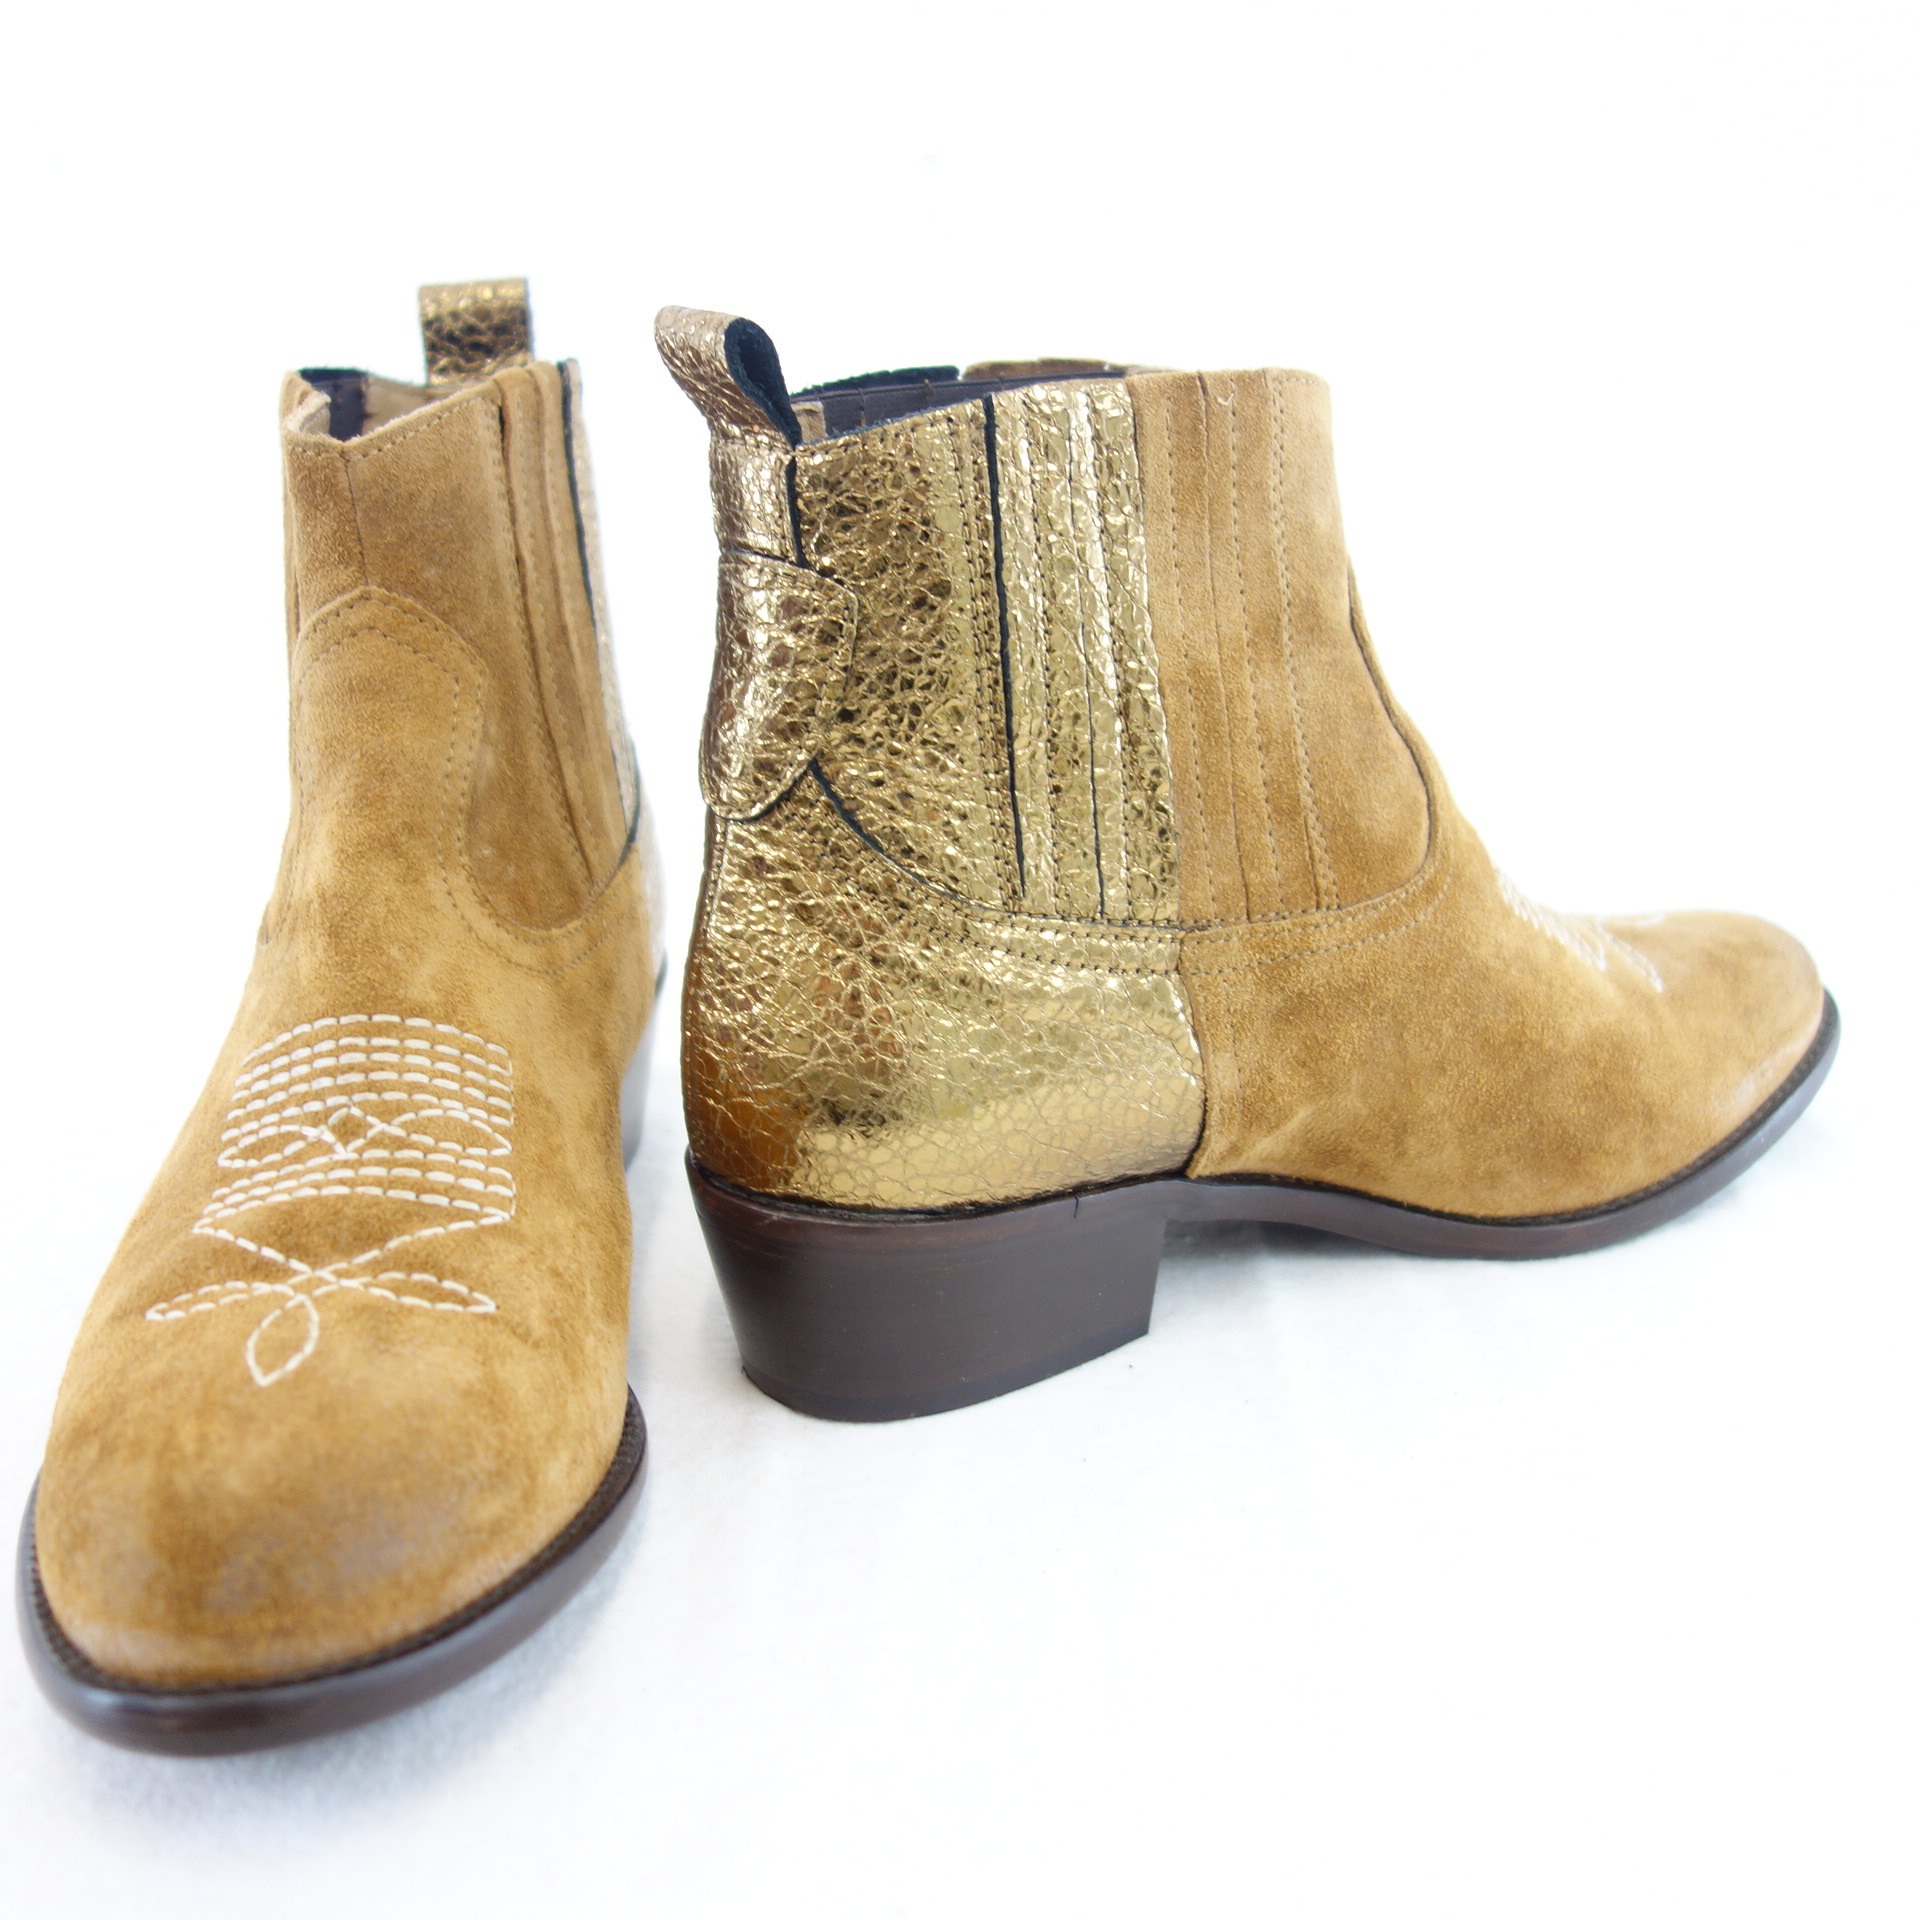 MÈLINÉ Damen Schuhe Stiefeletten Stiefel Celsea Boots Braun Gold Leder 37 ( 38 )